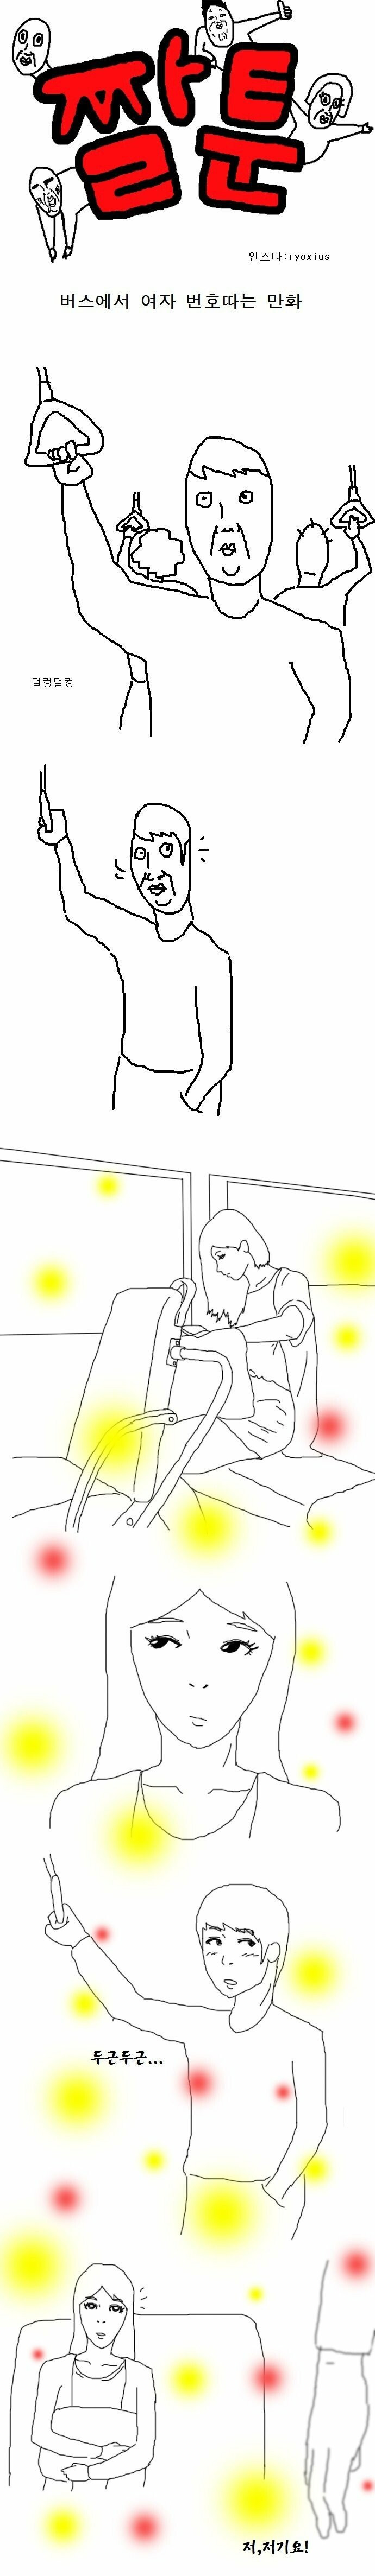 버스에서 여자 번호따는 만화 이미지 #1